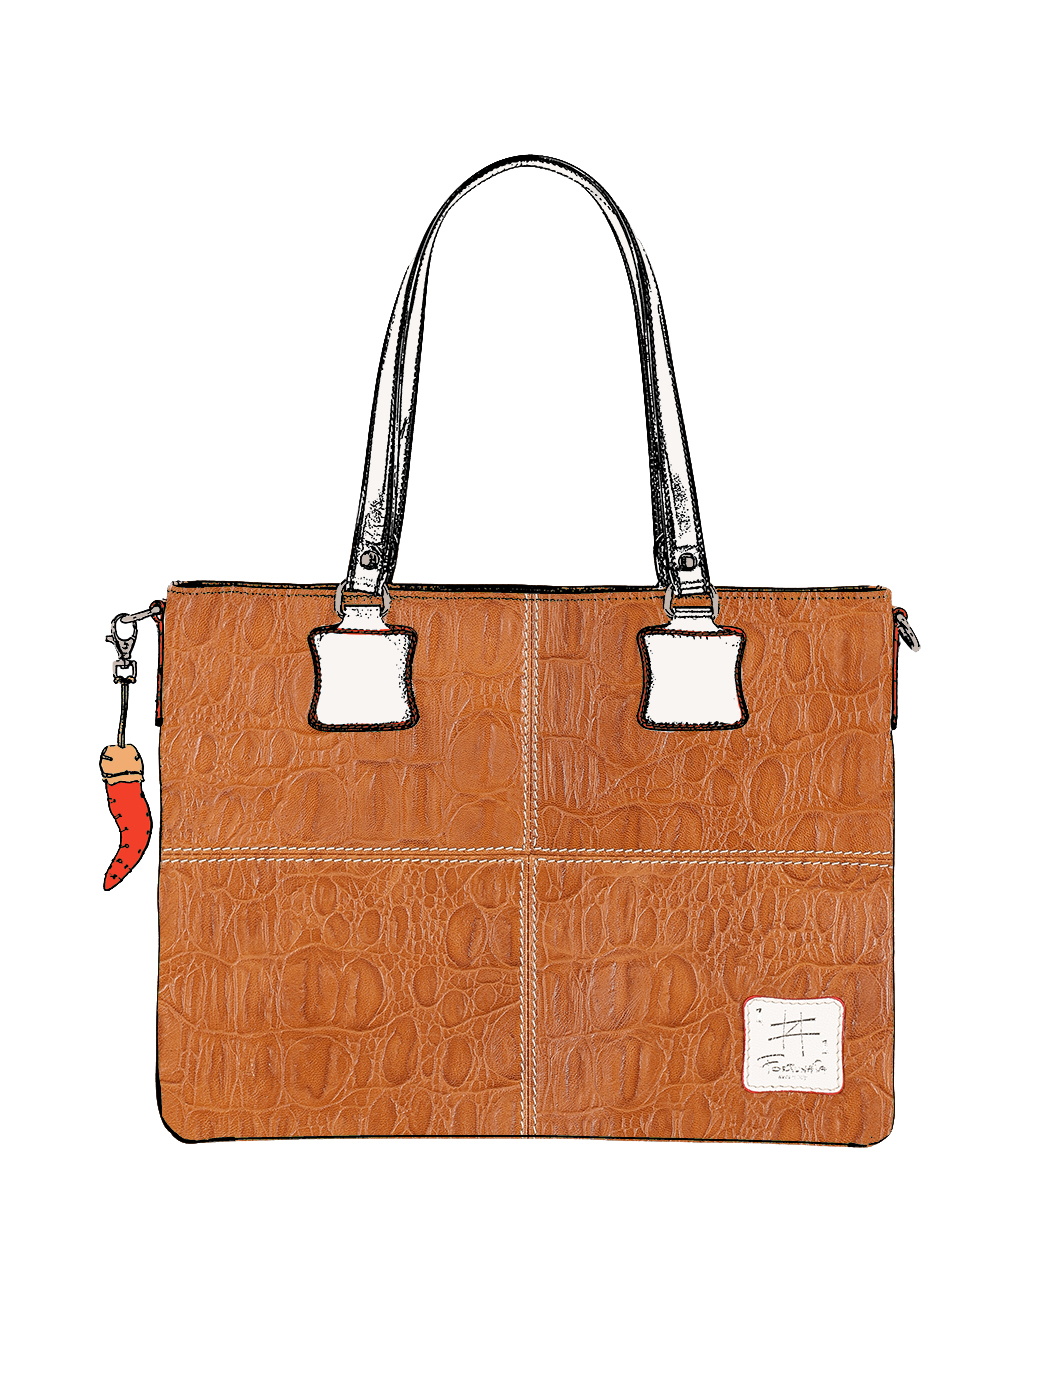 Дизайнерская сумка – шоппер из коллекции Fortunata коричневого цвета